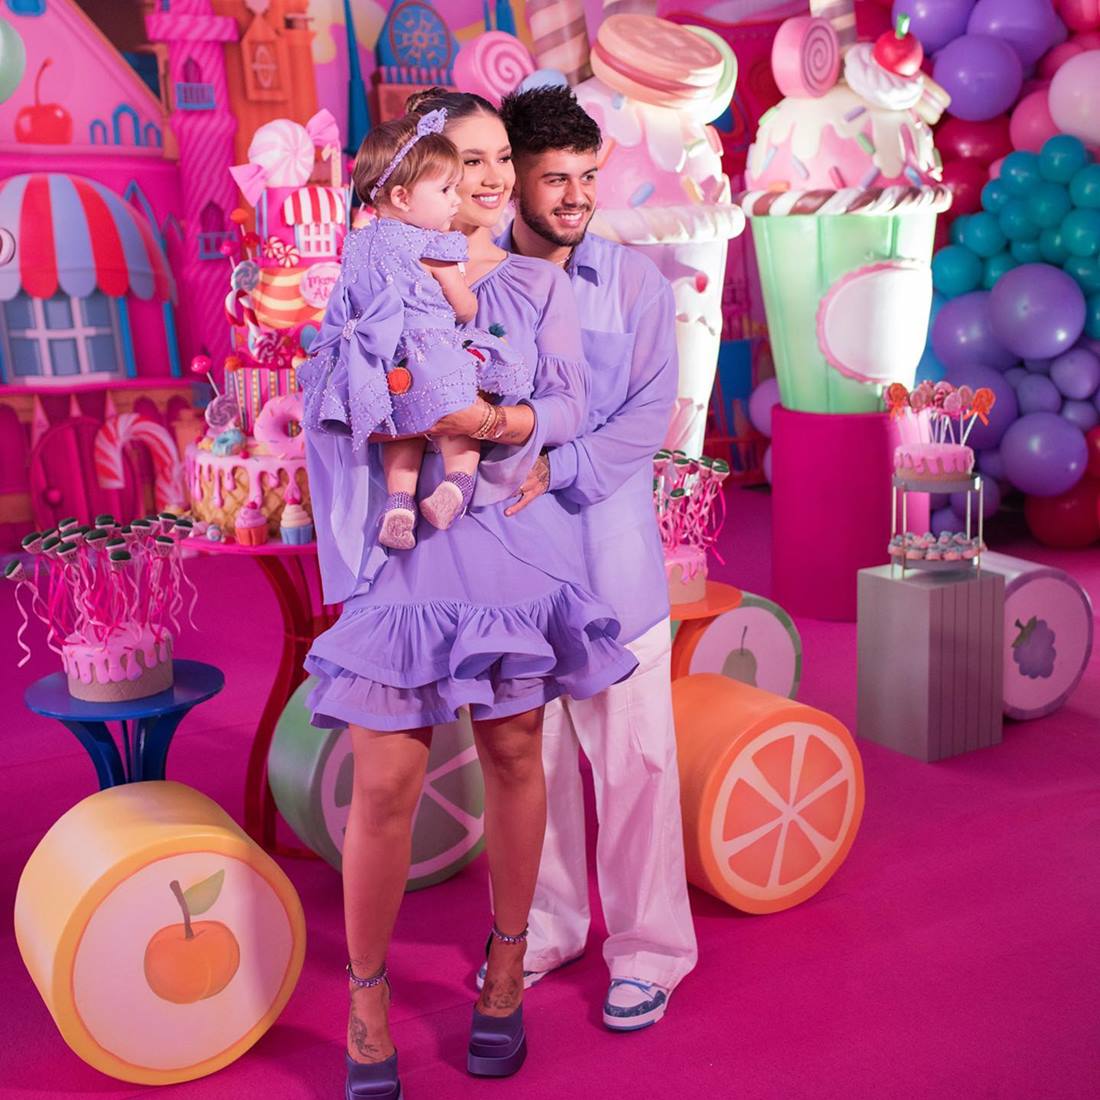 Virginia Fonseca Costa, o marido Zé Felipe e a filha Maria Alice. Todos usam roupas na cor lilás e, ao fundo, está o cenário da festa de aniversário da criança. - Metrópoles